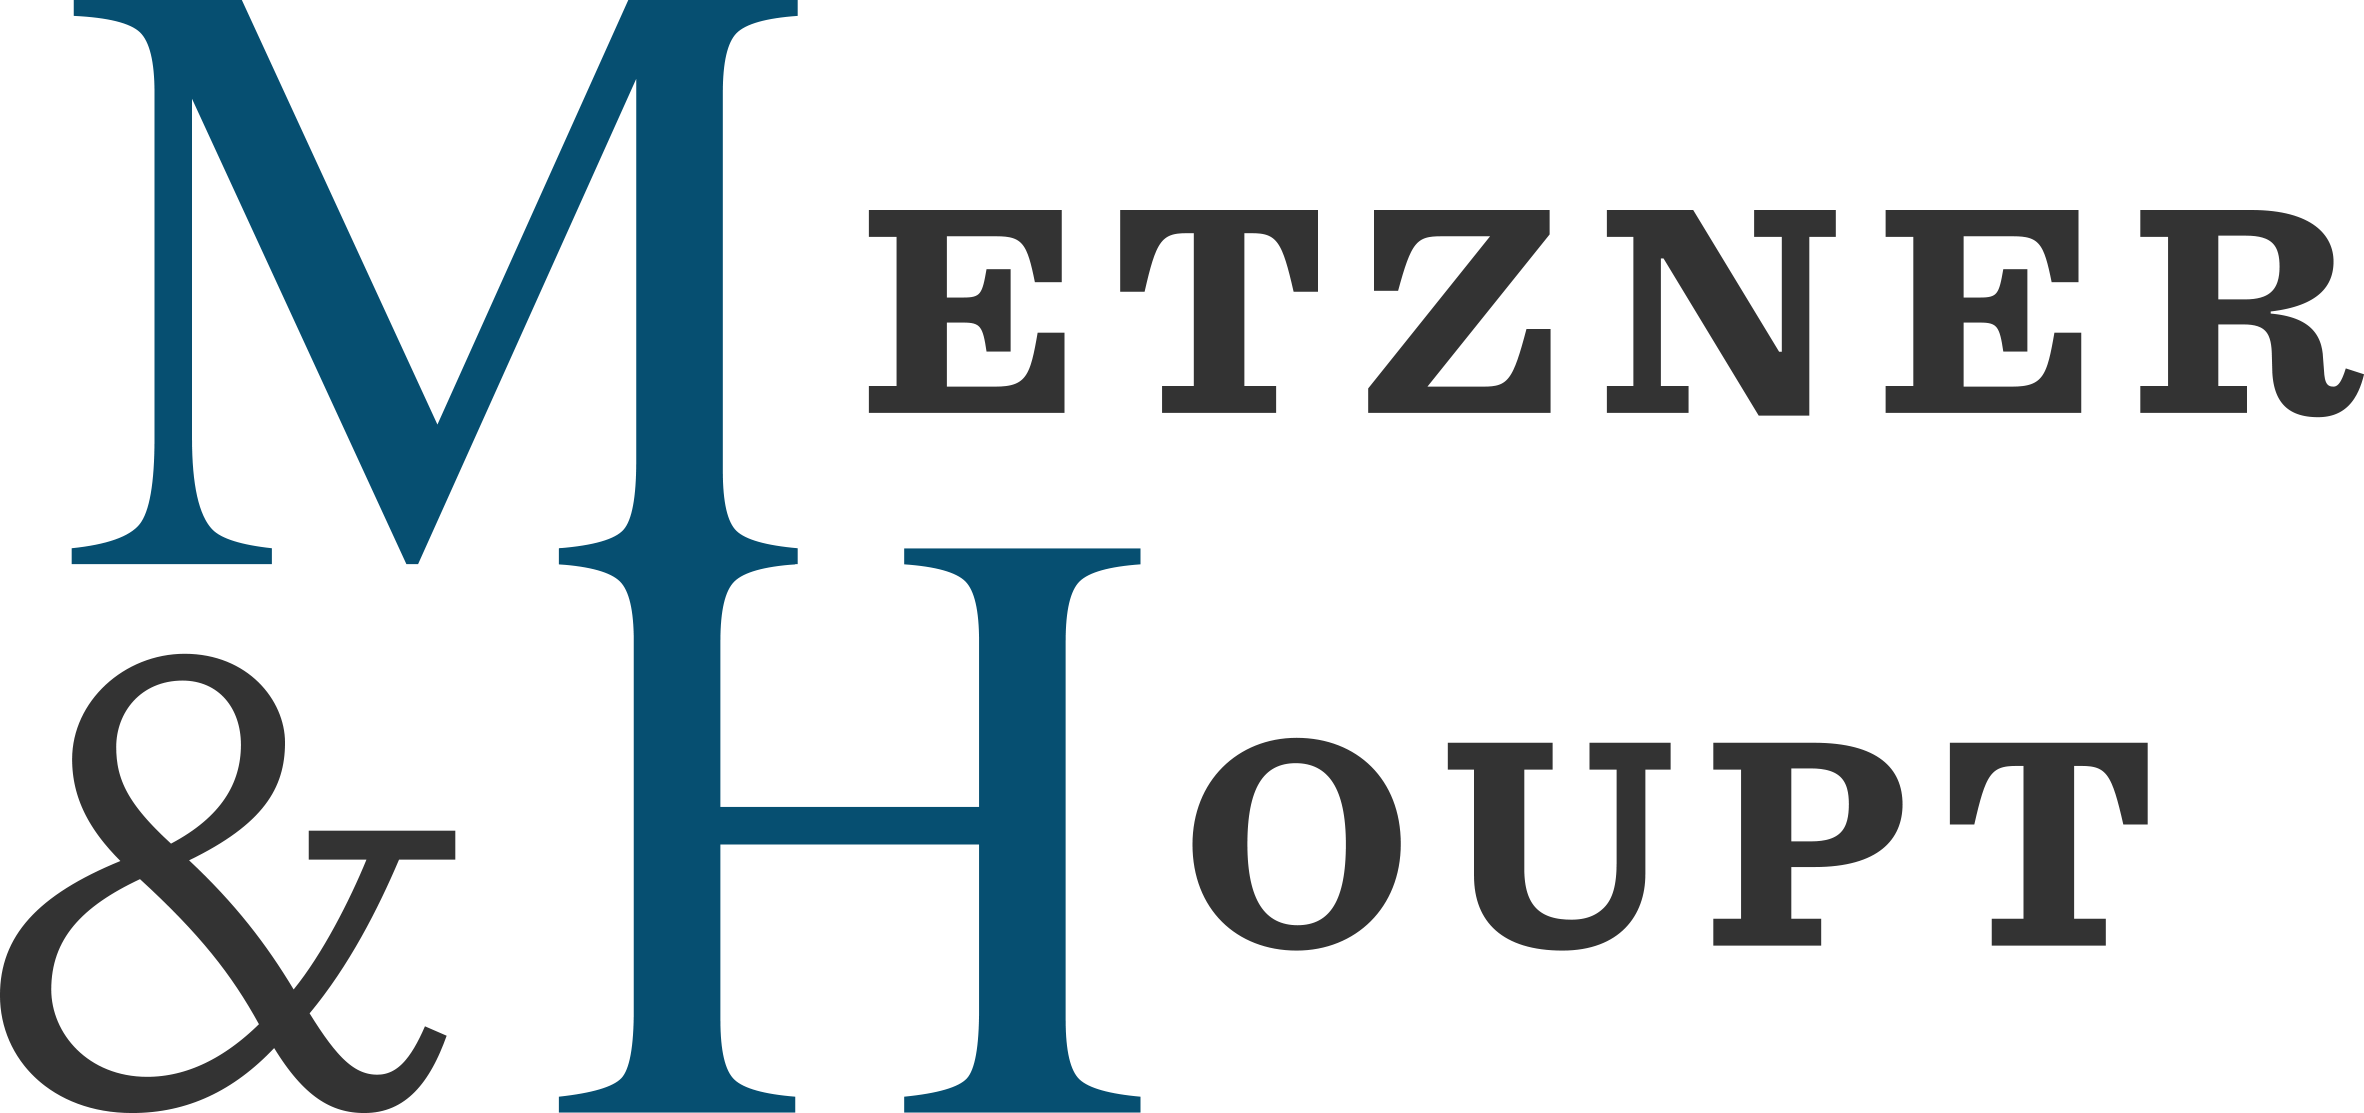 Metzner & Haupt logo